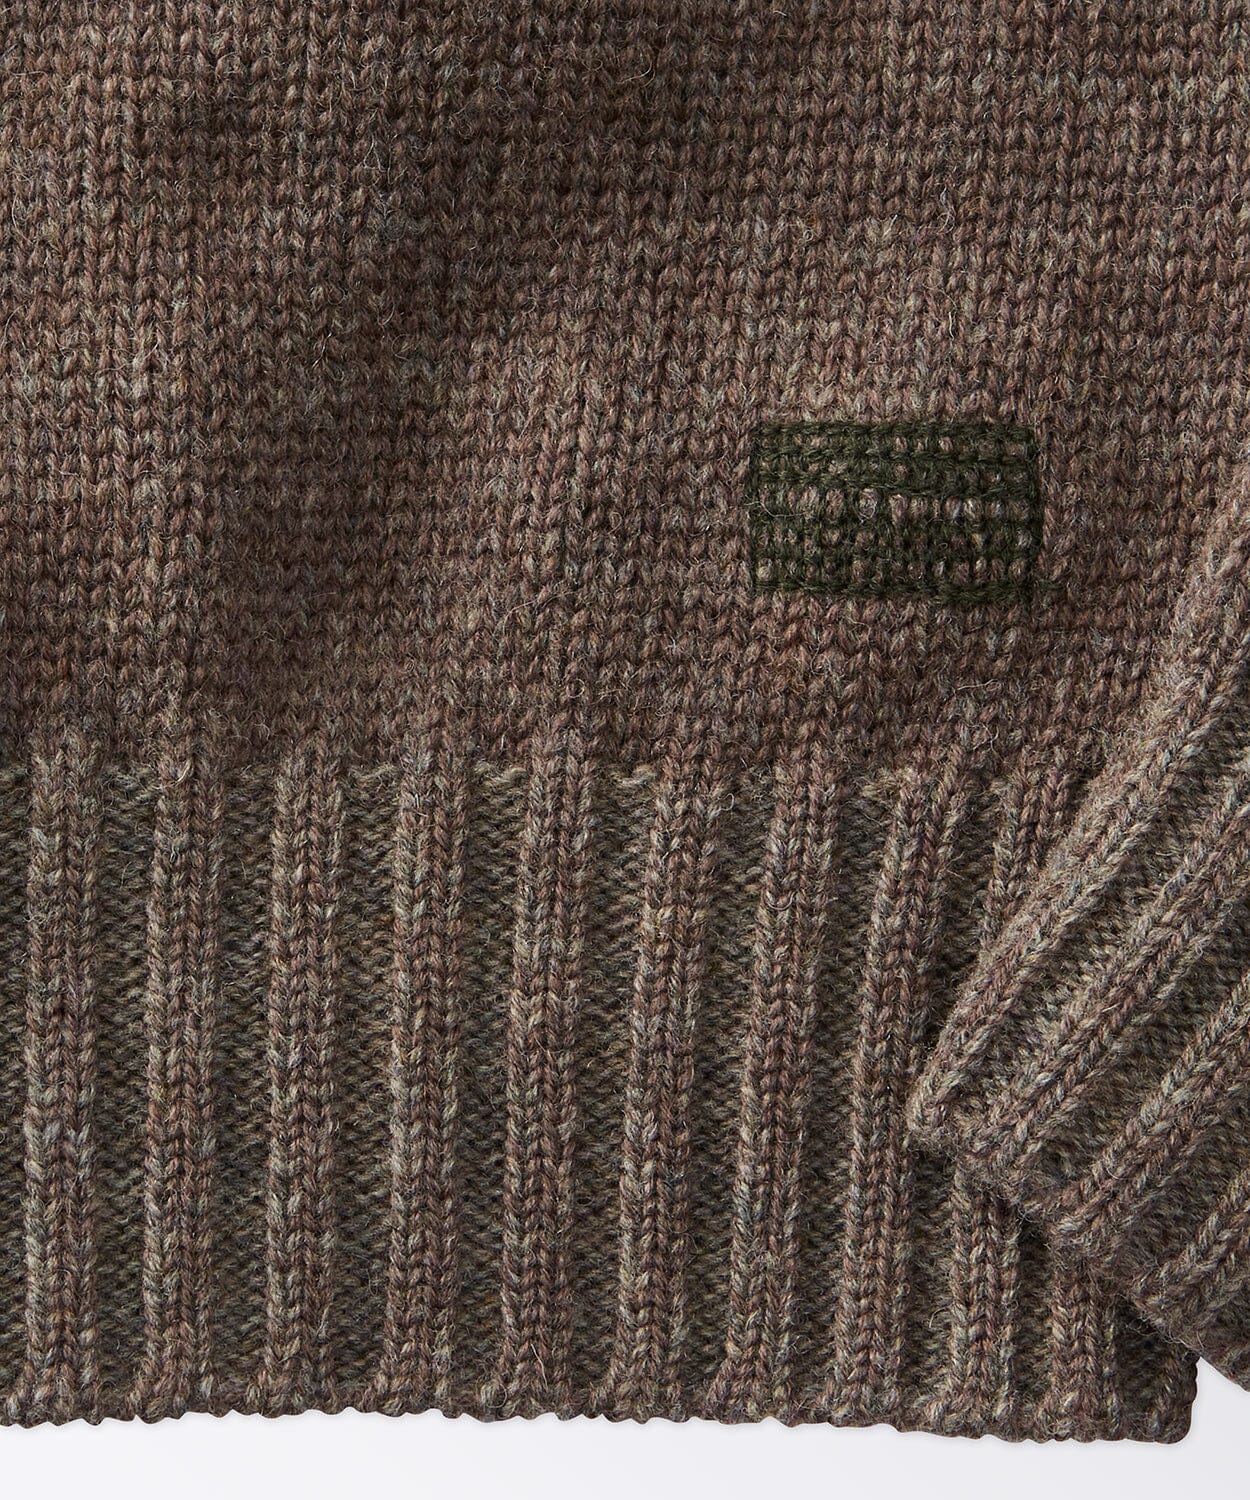 Edisto Crew Wool Sweater Sweaters OOBE BRAND 